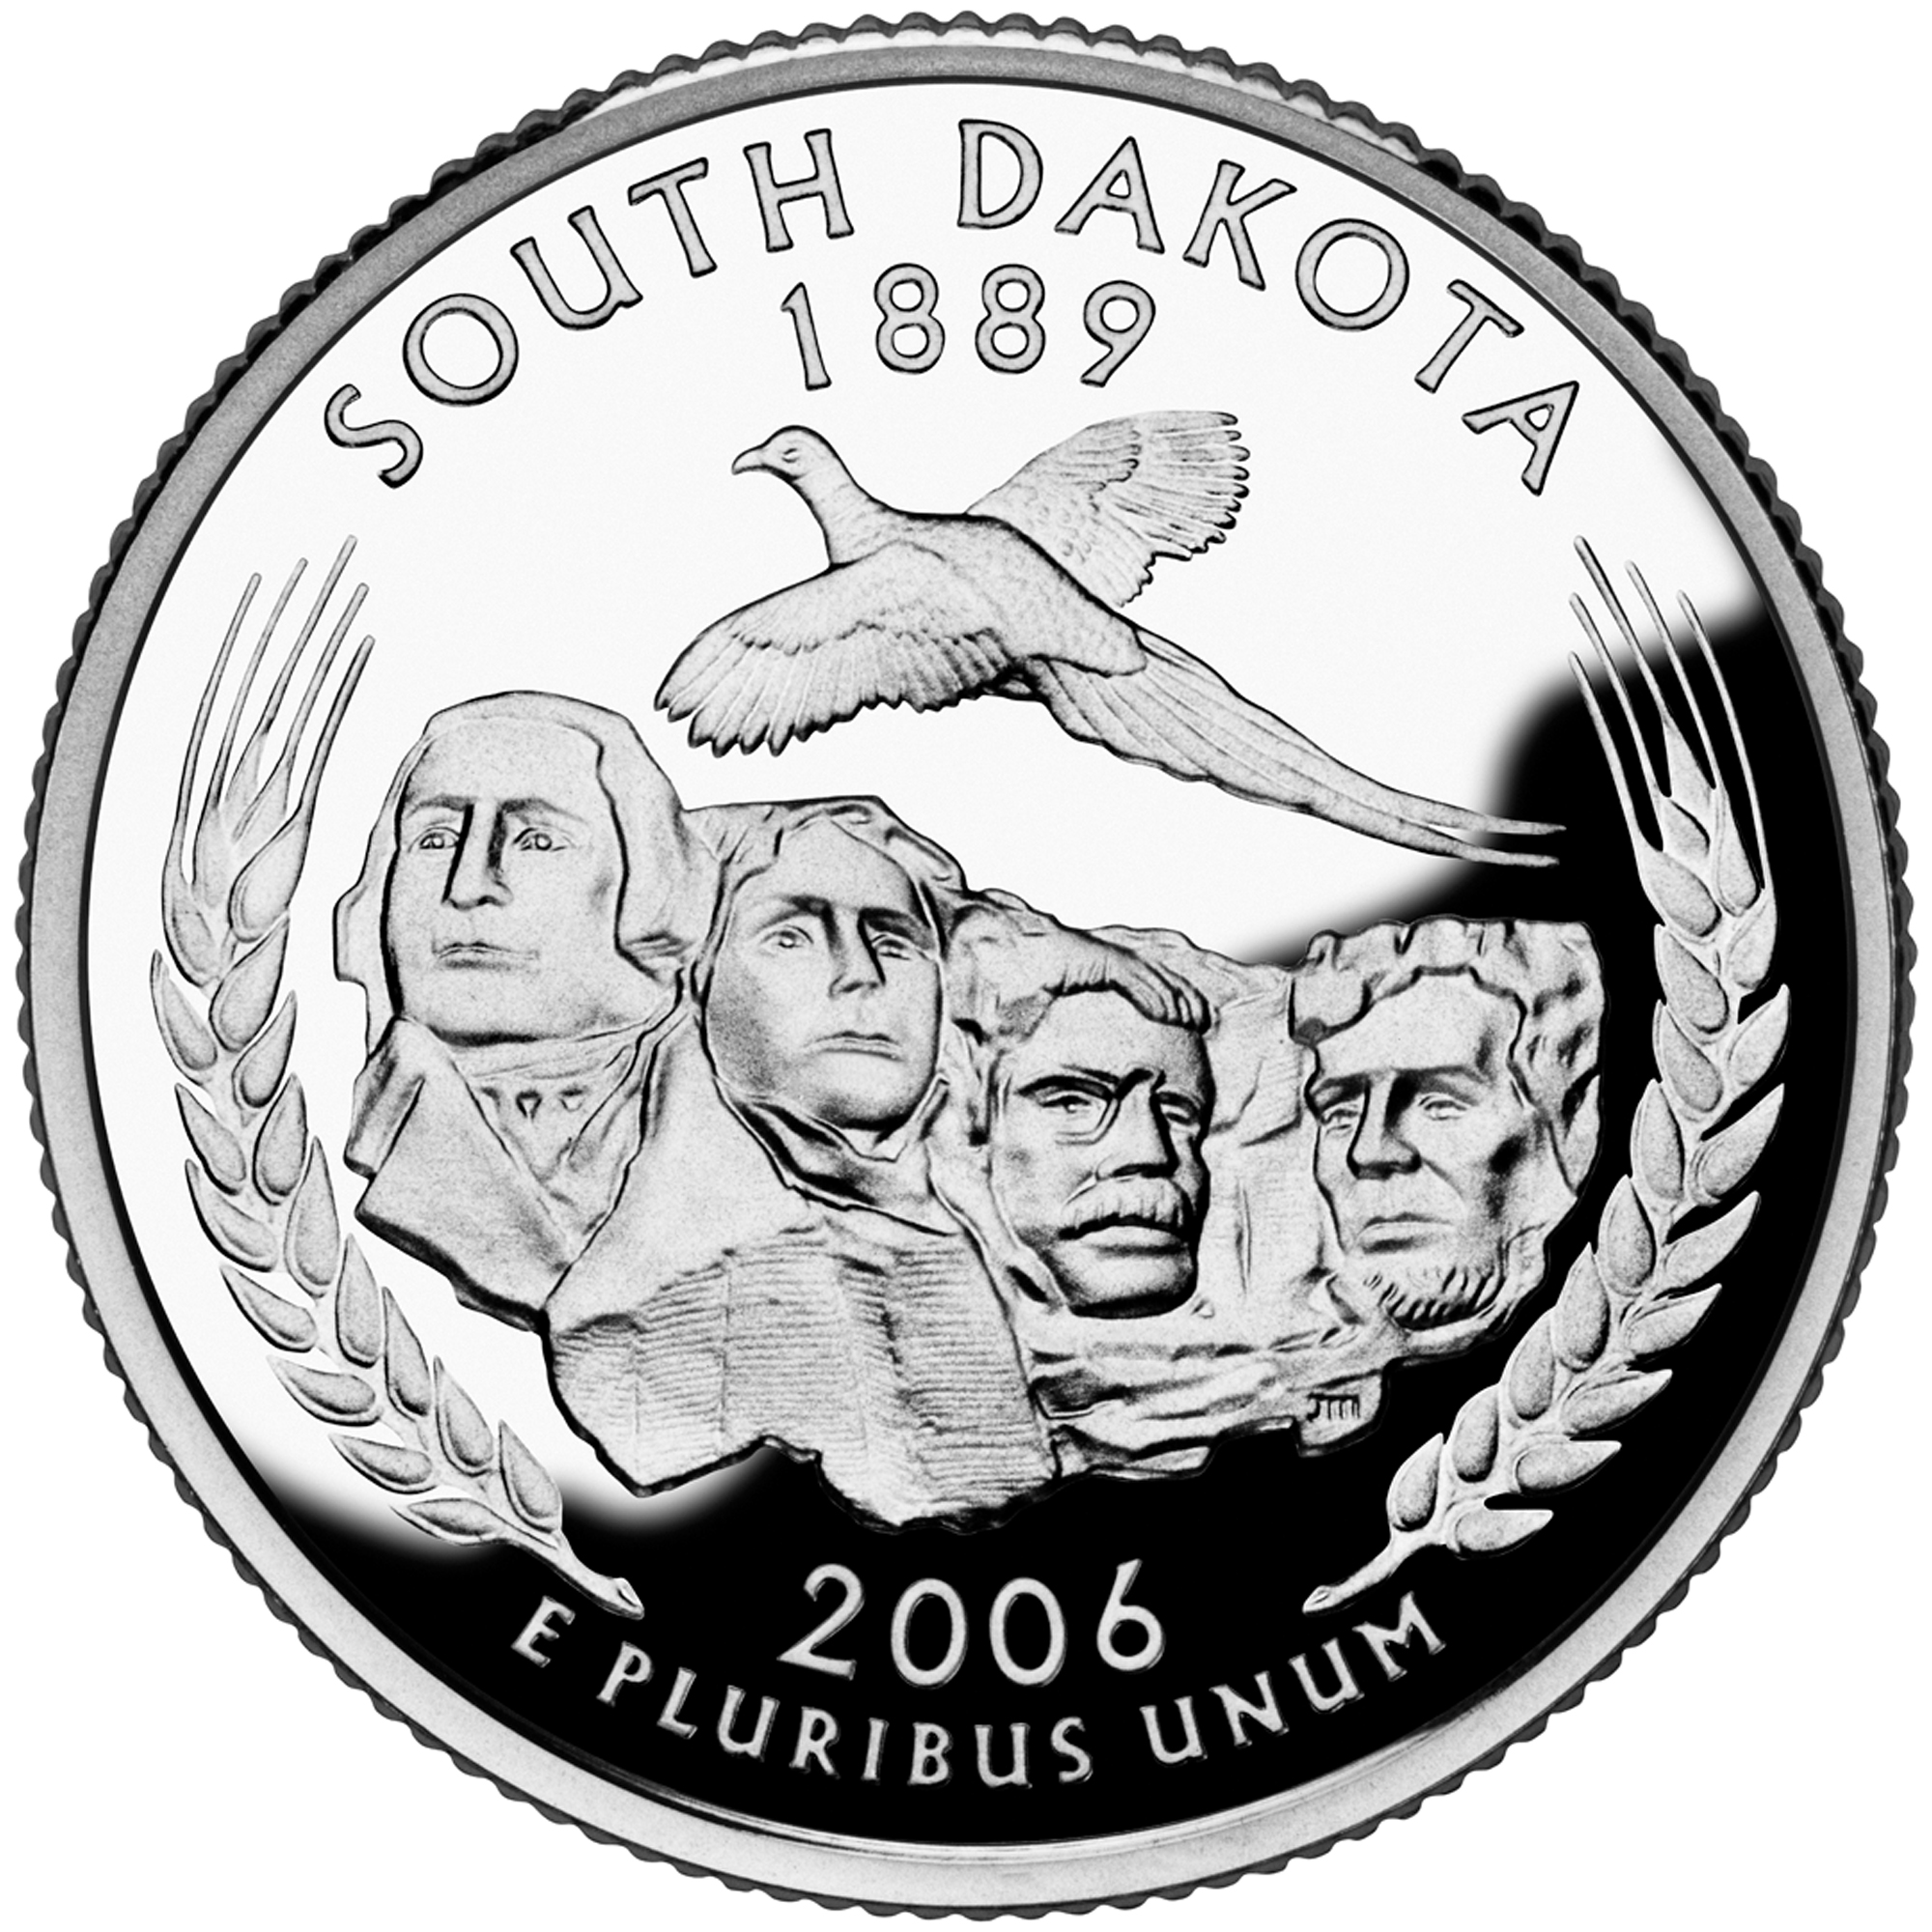 South Dakota quarter, reverse side, 2006